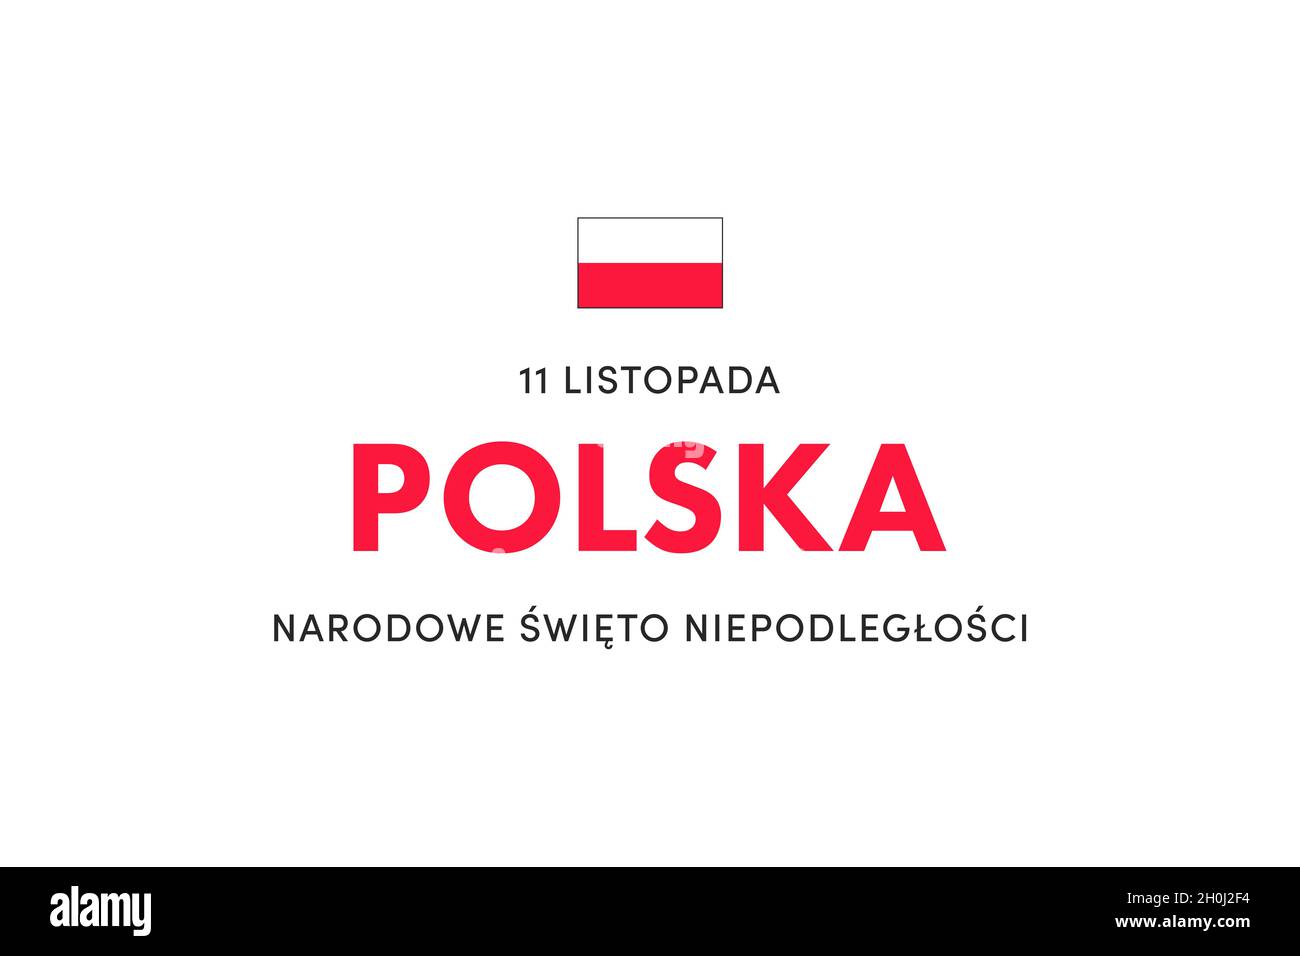 Independence day of Poland. (Polish: Narodowe Święto Niepodległości, Polska,11 listopada. Translation: National Independence Day, Poland, November 11) Stock Photo